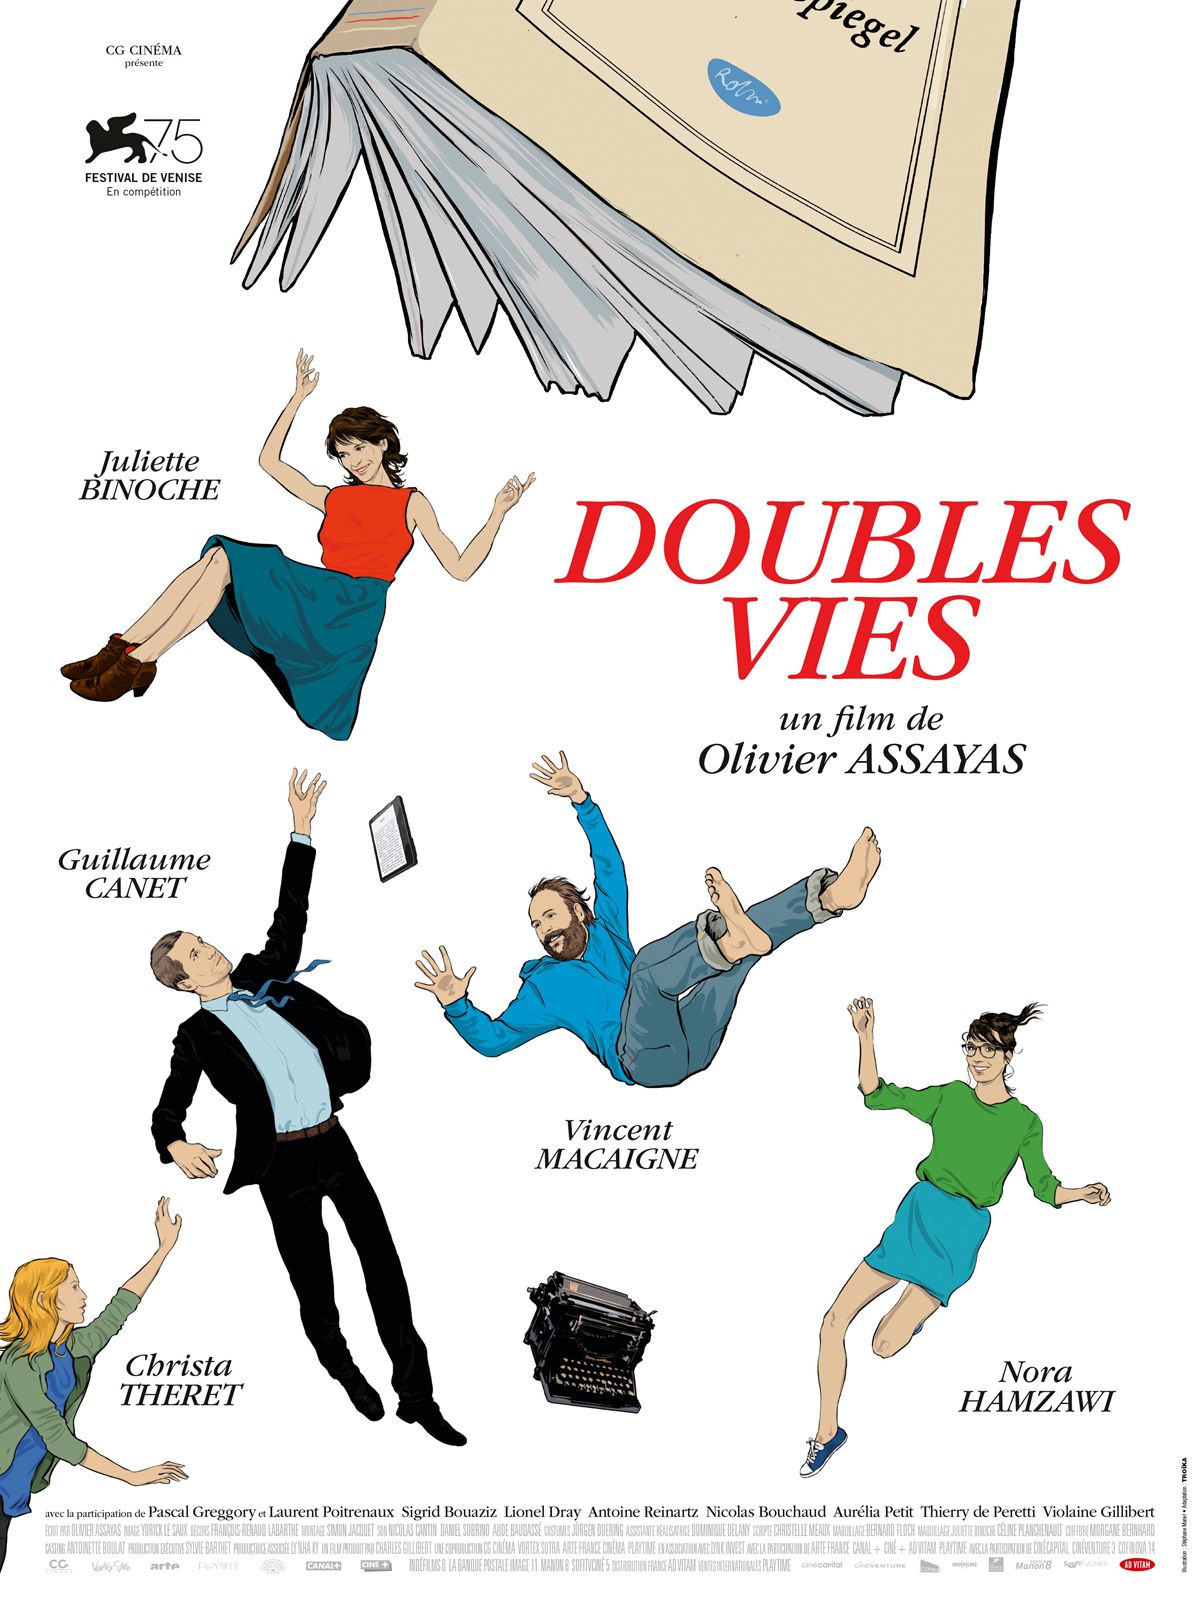 Doubles vies - Film (2019)